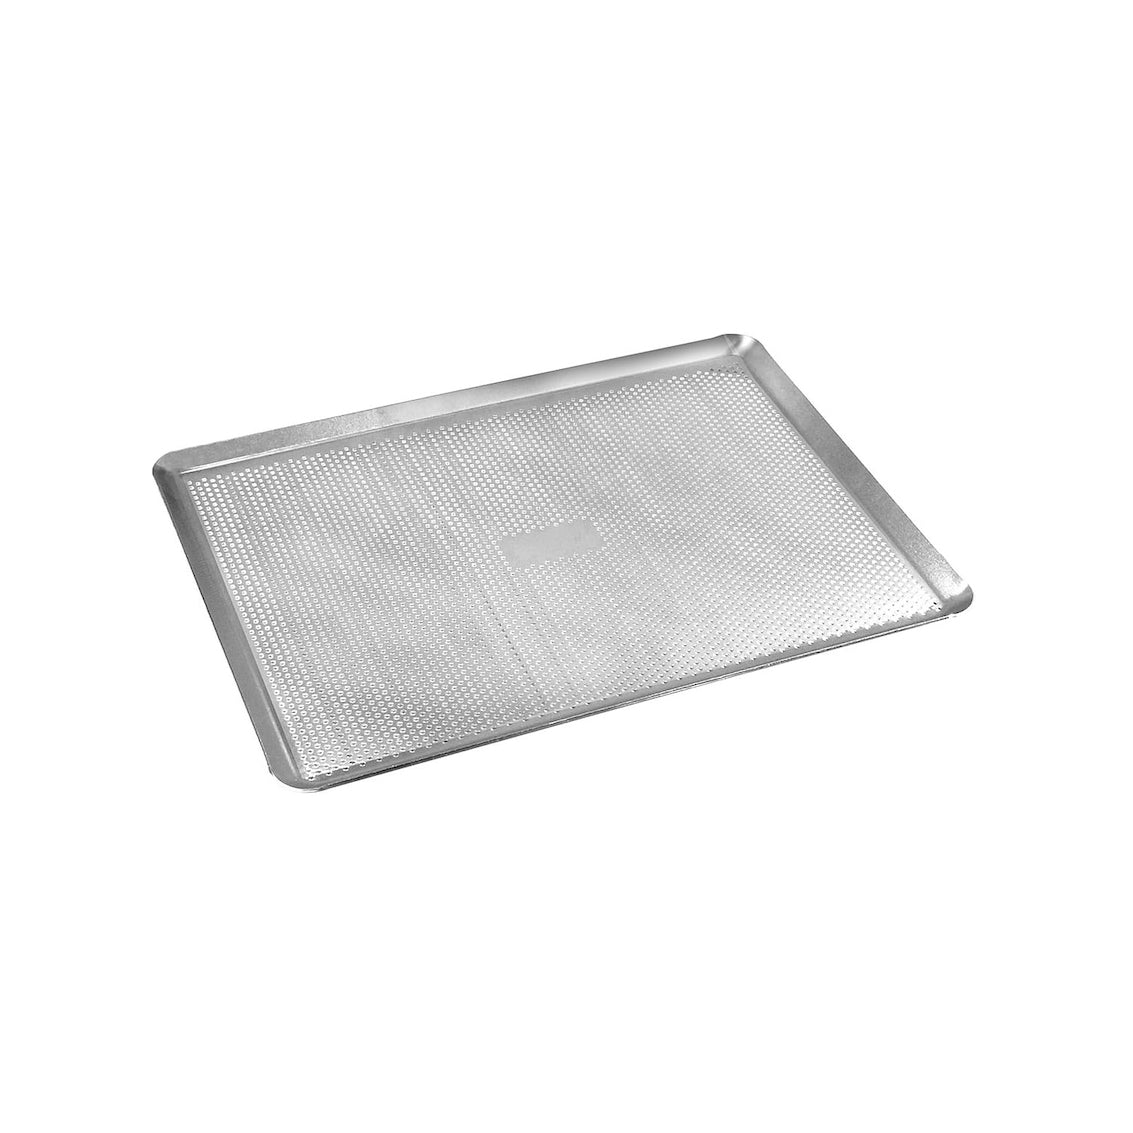 GUSTA SUPPLIES Perforated Baking Sheet Pan, 15.75